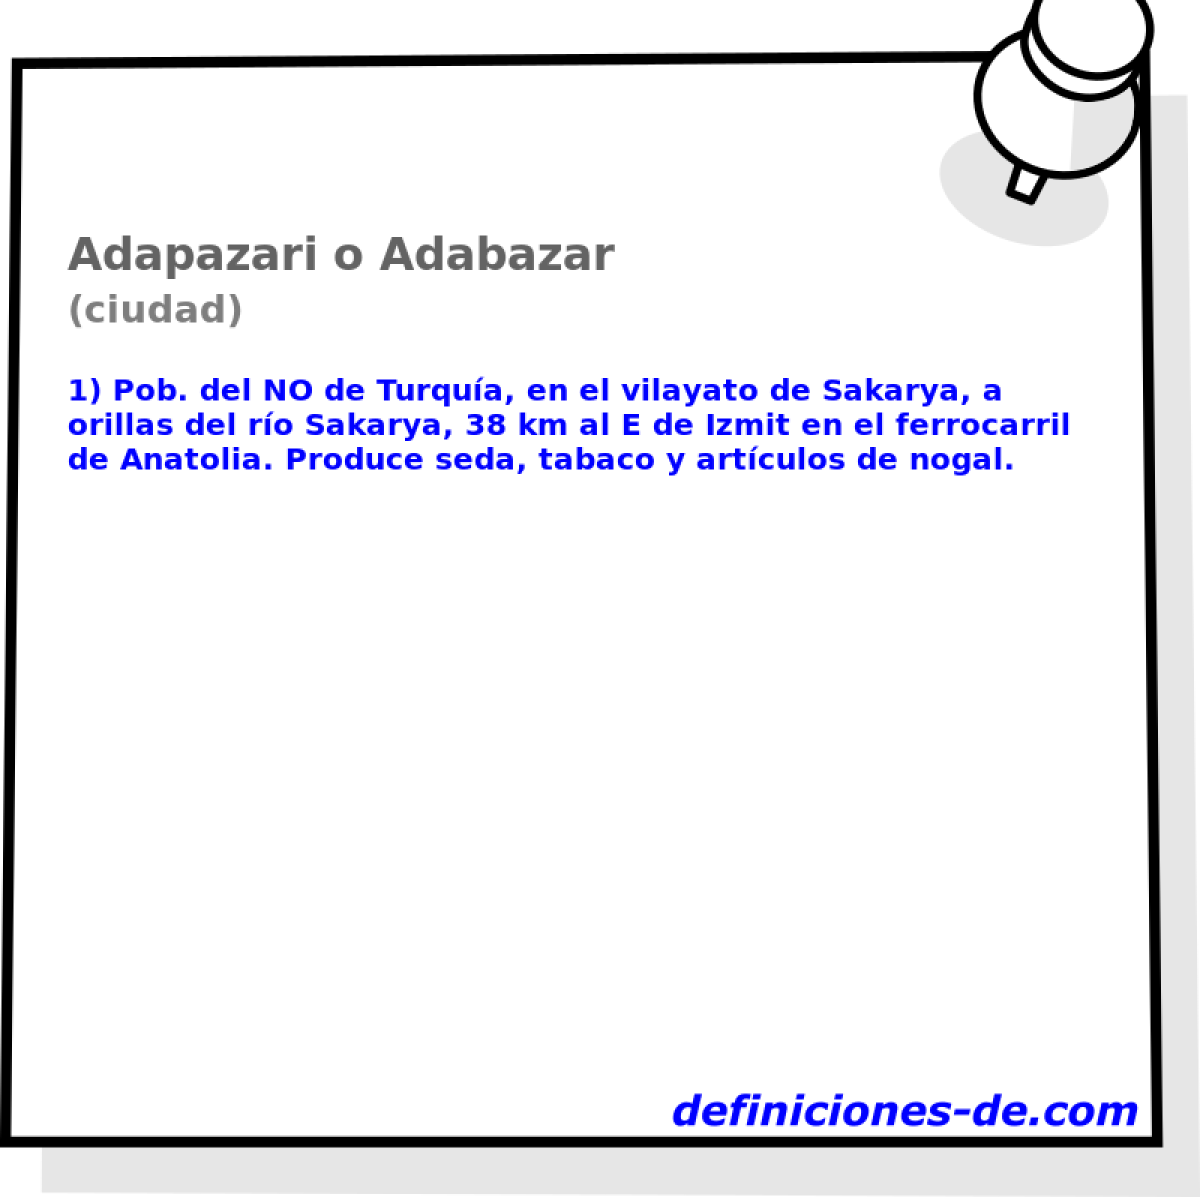 Adapazari o Adabazar (ciudad)